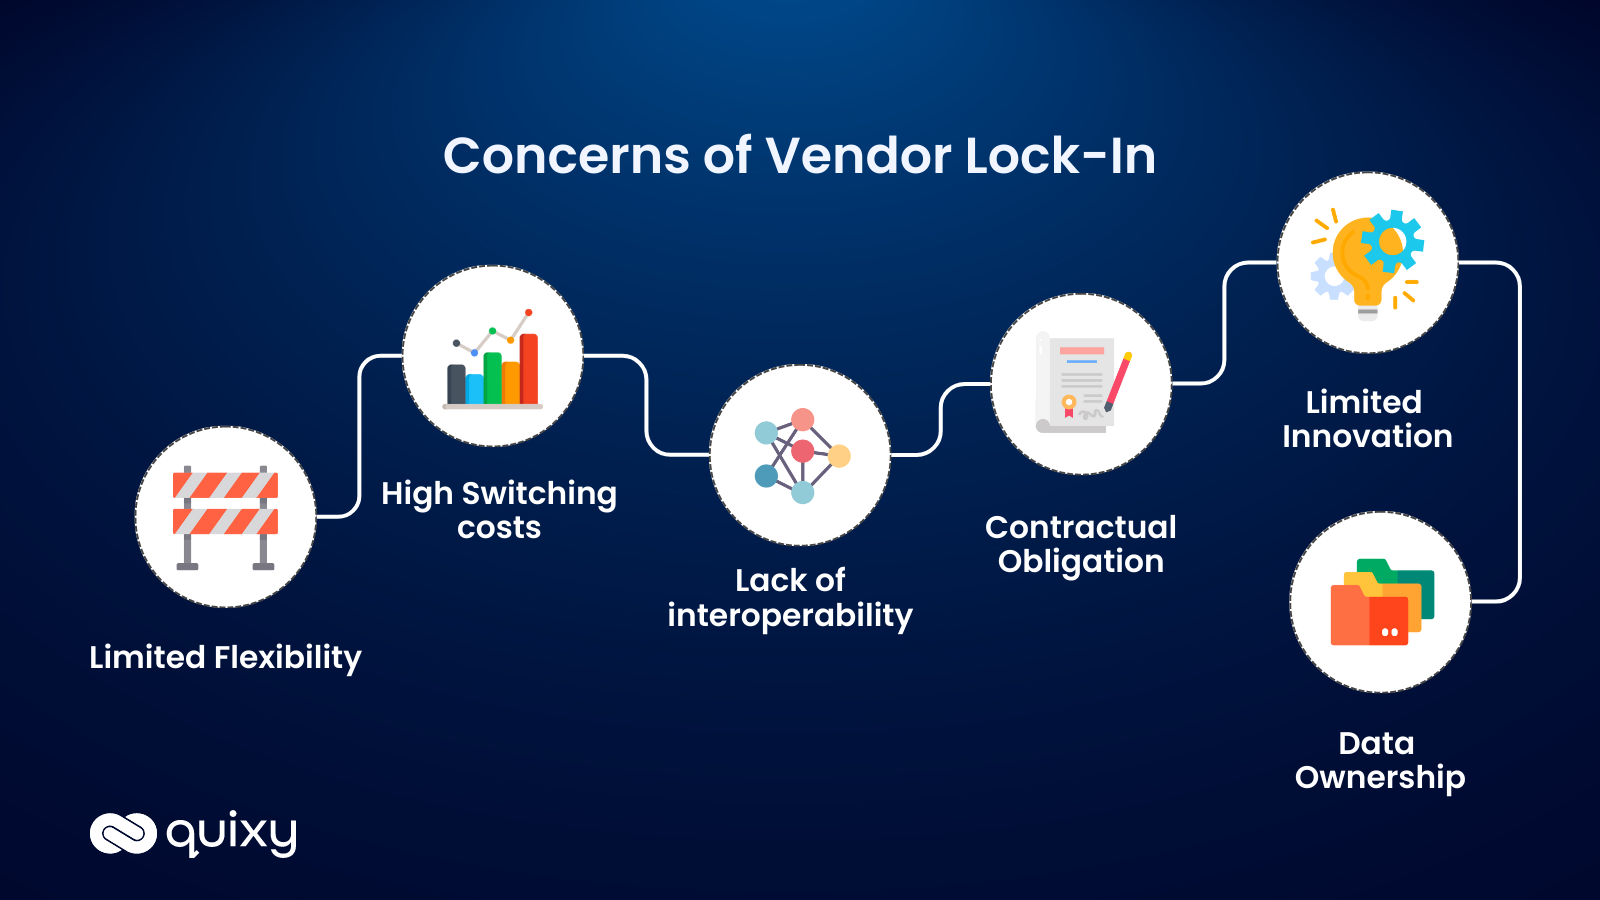 Concerns of vendor lock-in